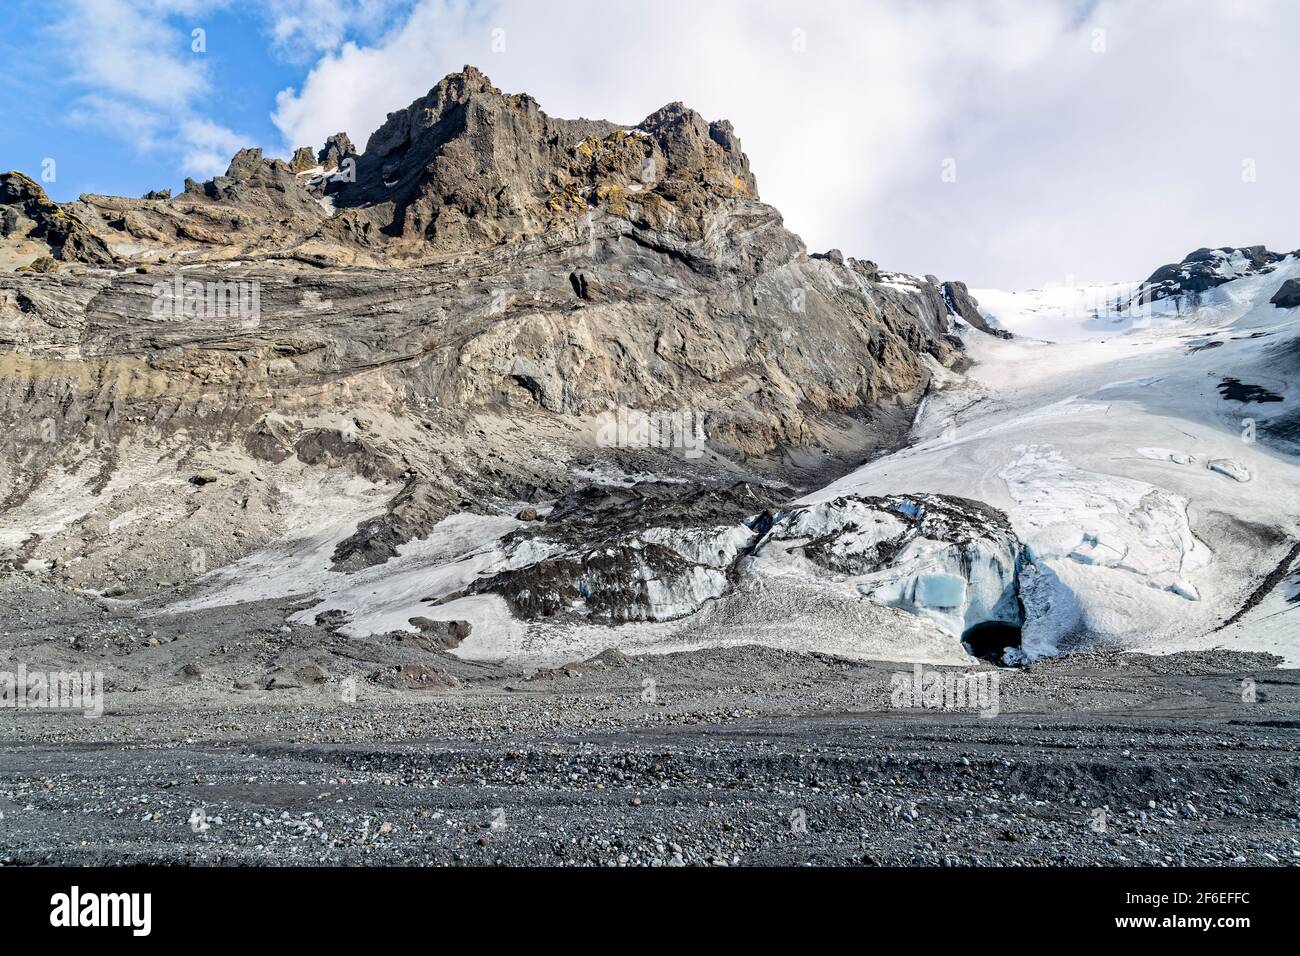 Gígjökull, Islanda. 18 maggio 2015. Gígjökull è uno dei due ghiacciai che discendono dalla calotta di ghiaccio principale di Eyjafjallajokull, situata in Islanda Foto Stock